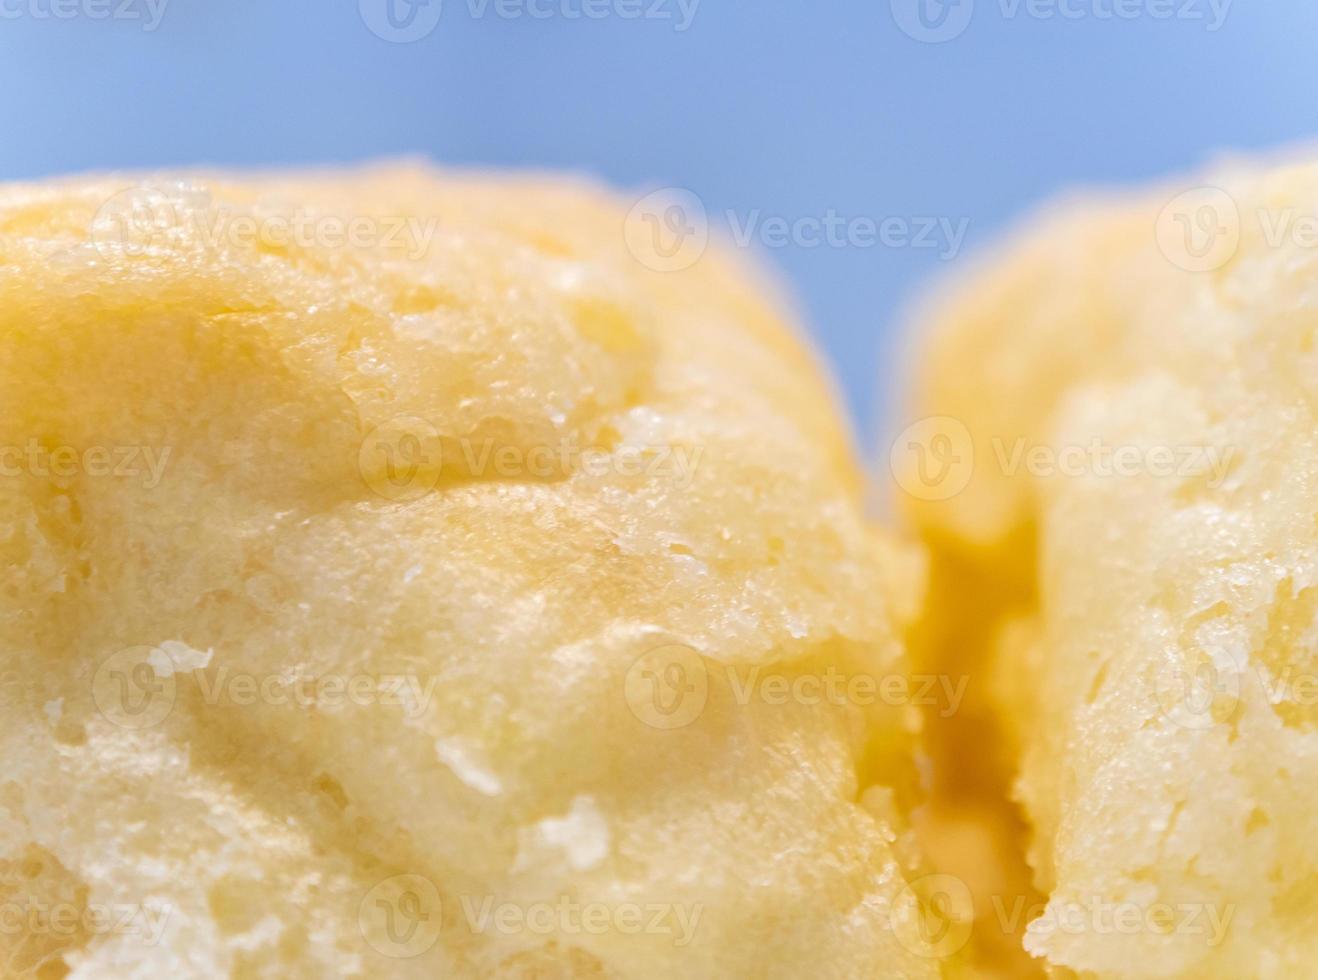 textura de close-up de açúcar finamente revestido no pão macio foto